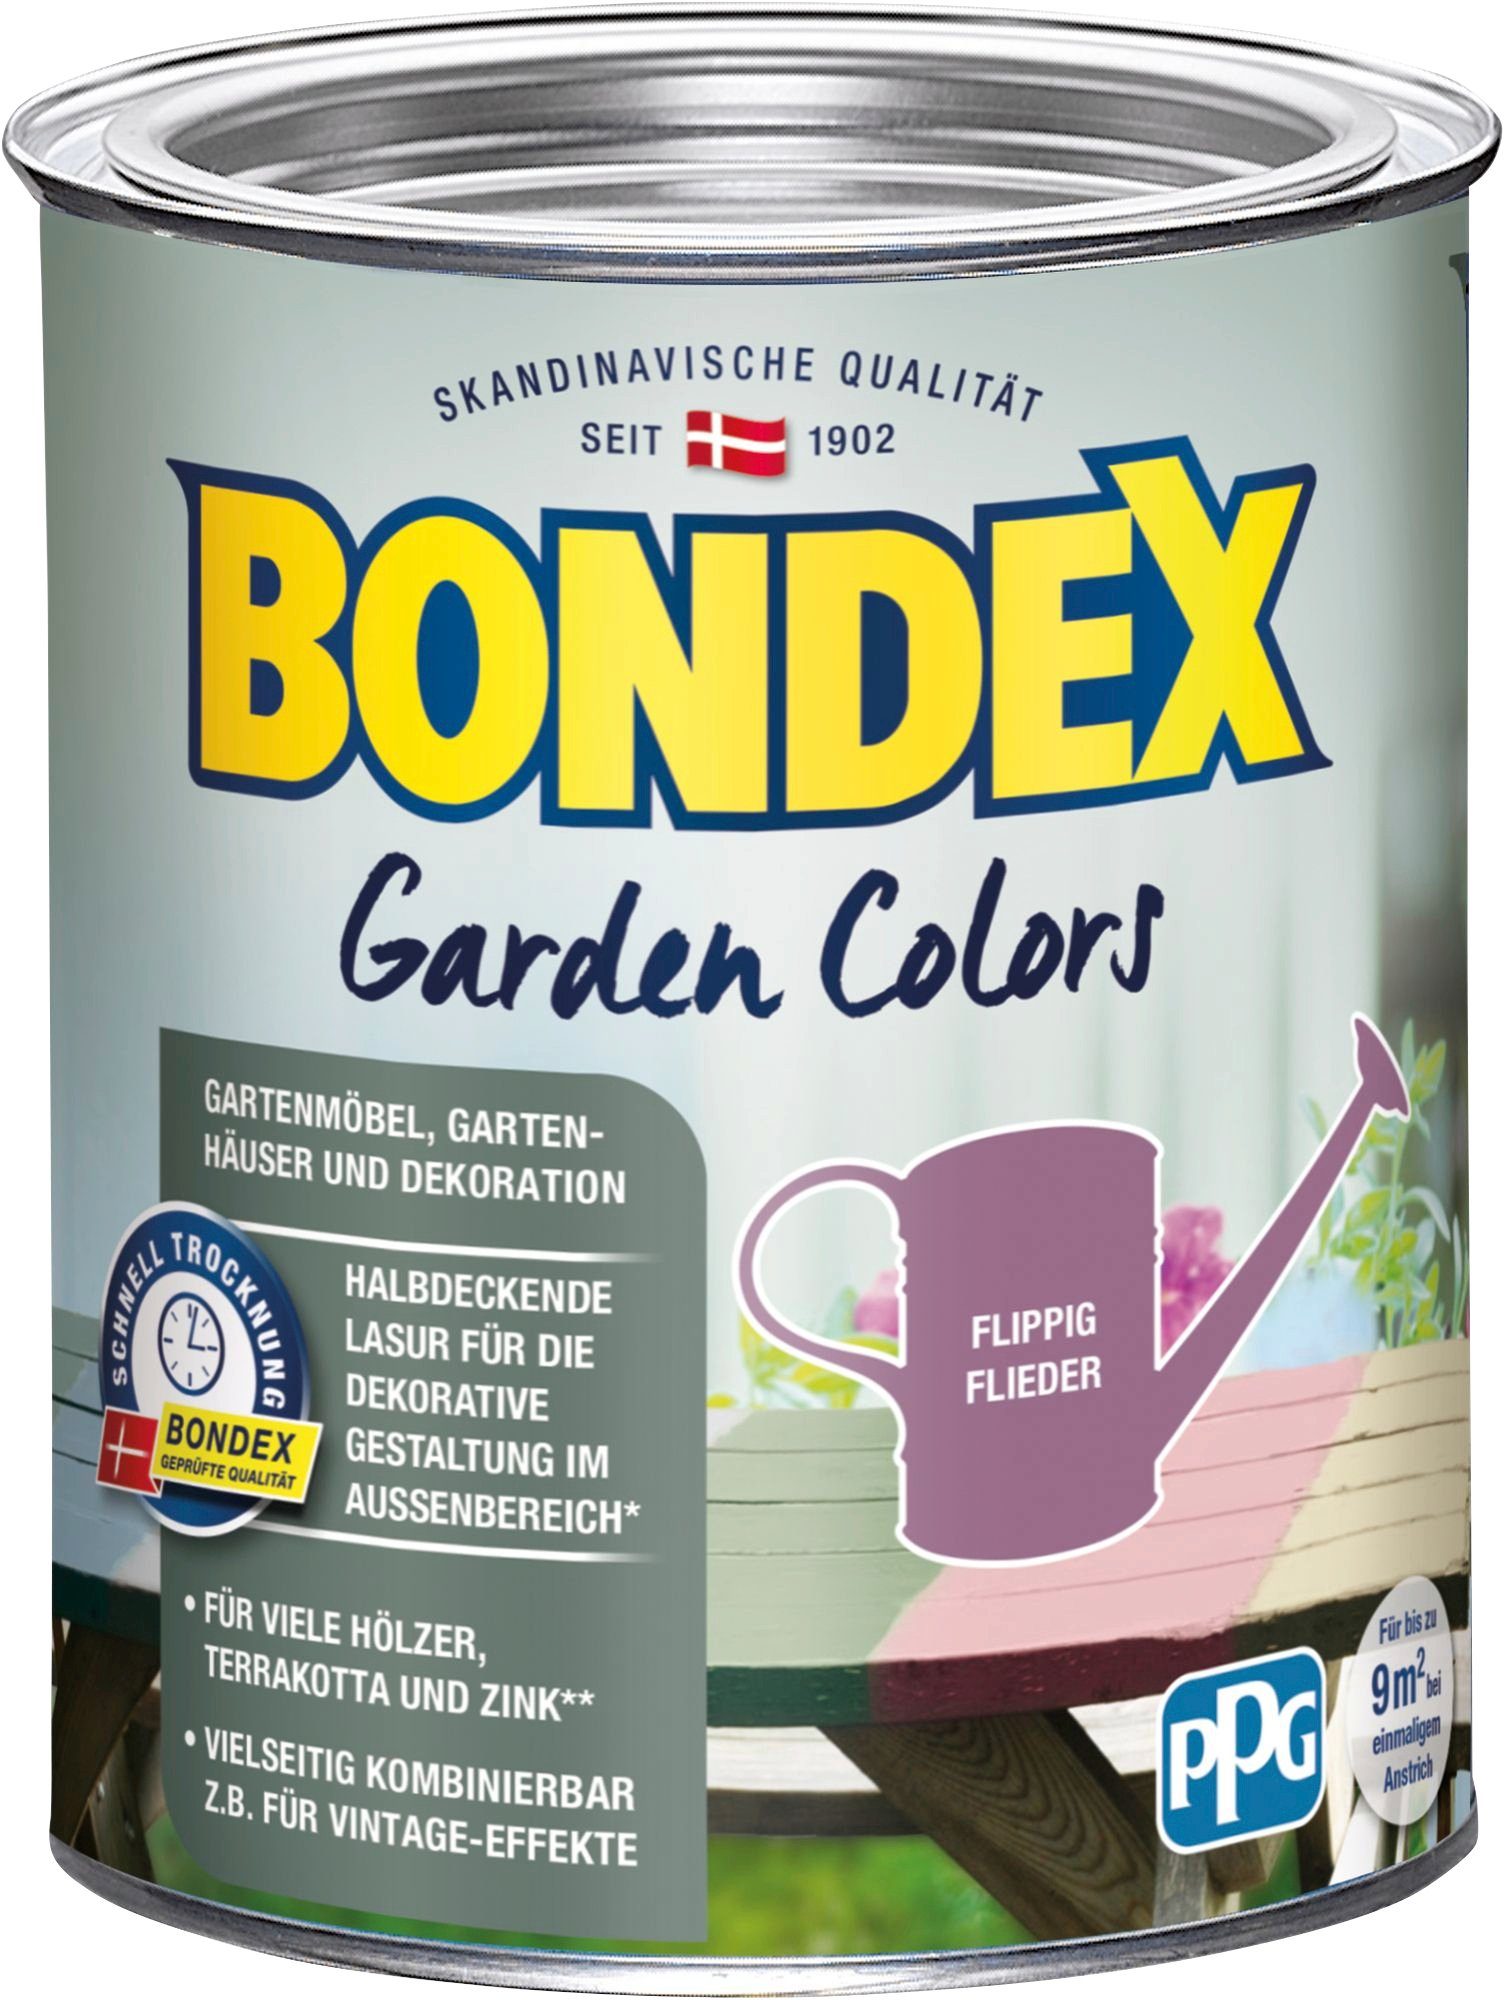 Bondex Wetterschutzfarbe GARDEN COLORS, Behagliches Grün, 0,75 Liter Inhalt Flippig Flieder